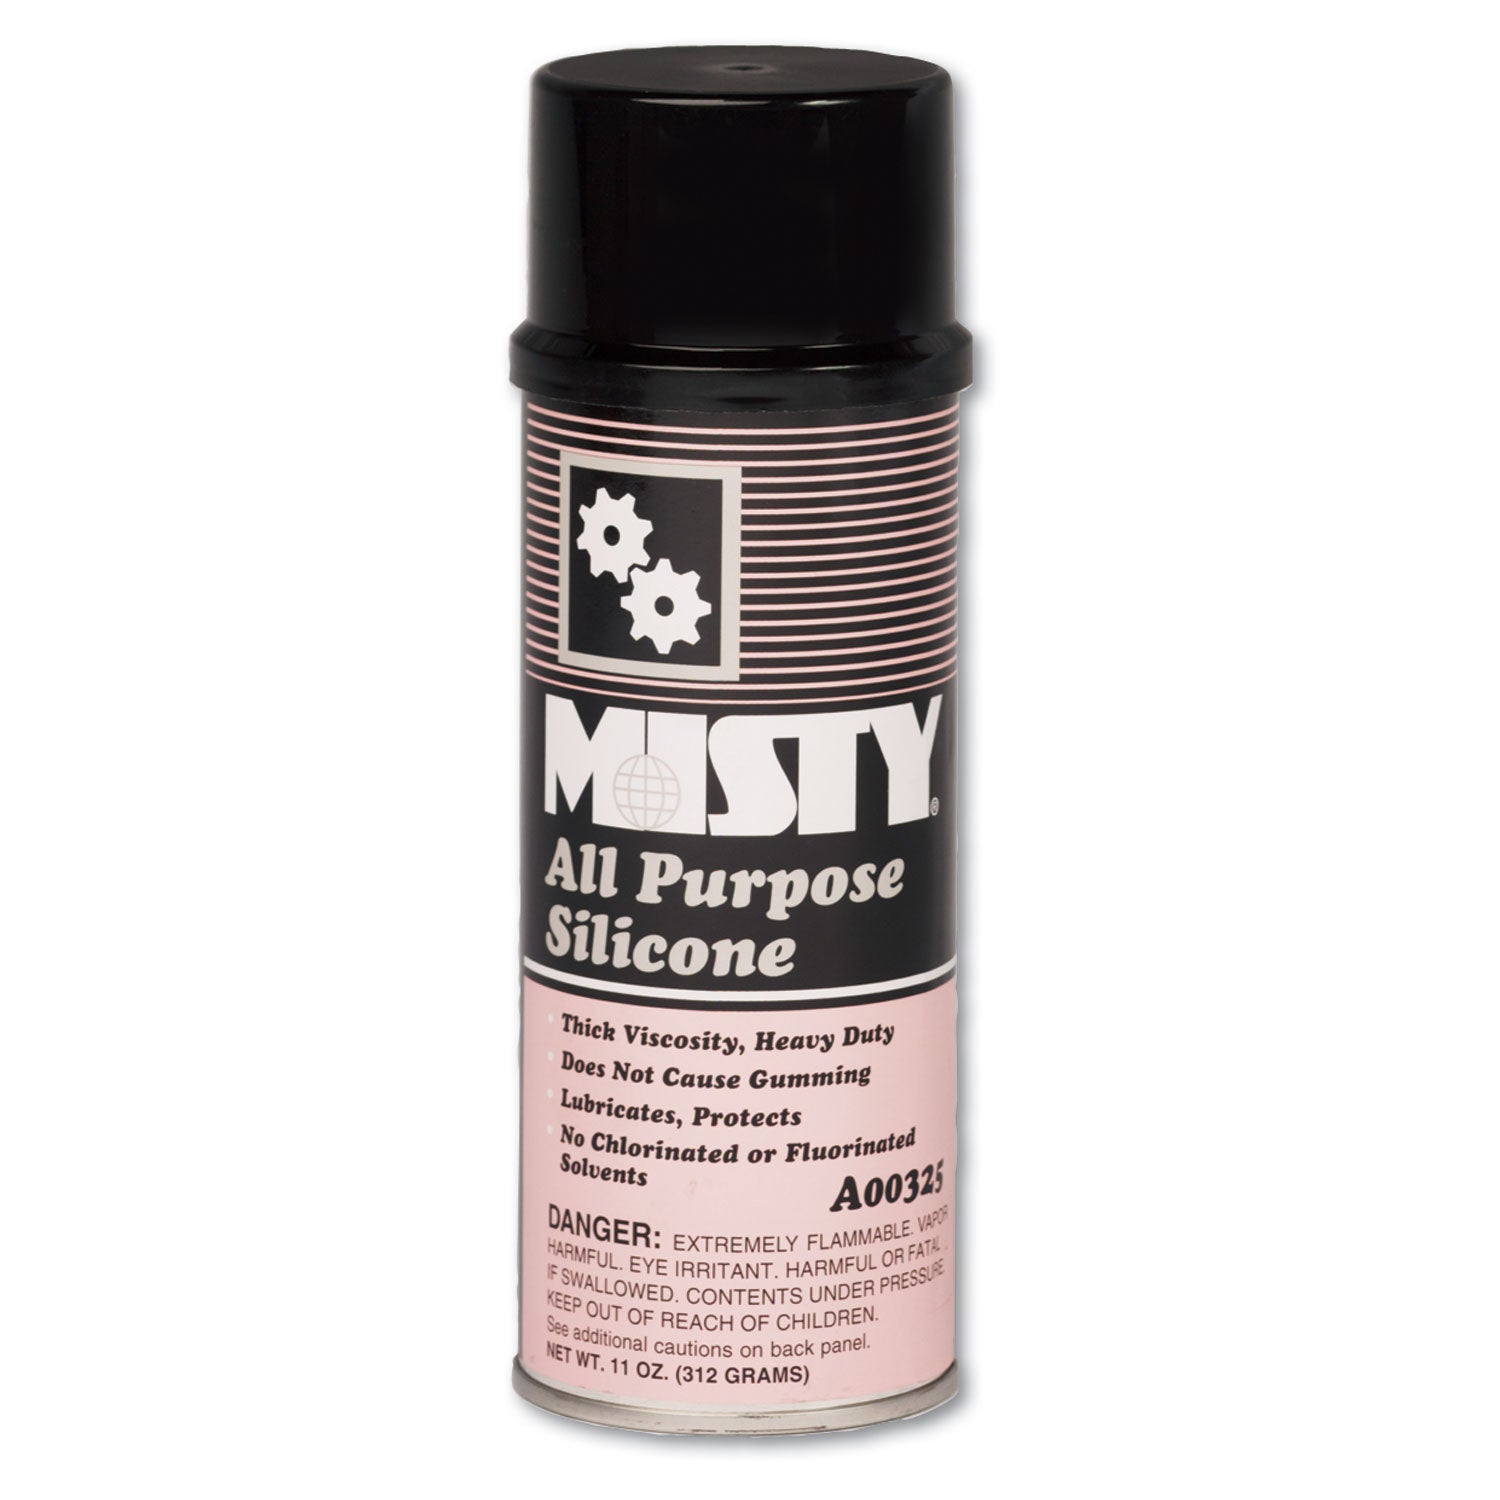 all-purpose-silicone-spray-lubricant-11-oz-aerosol-can-12-carton_amr1002092 - 1